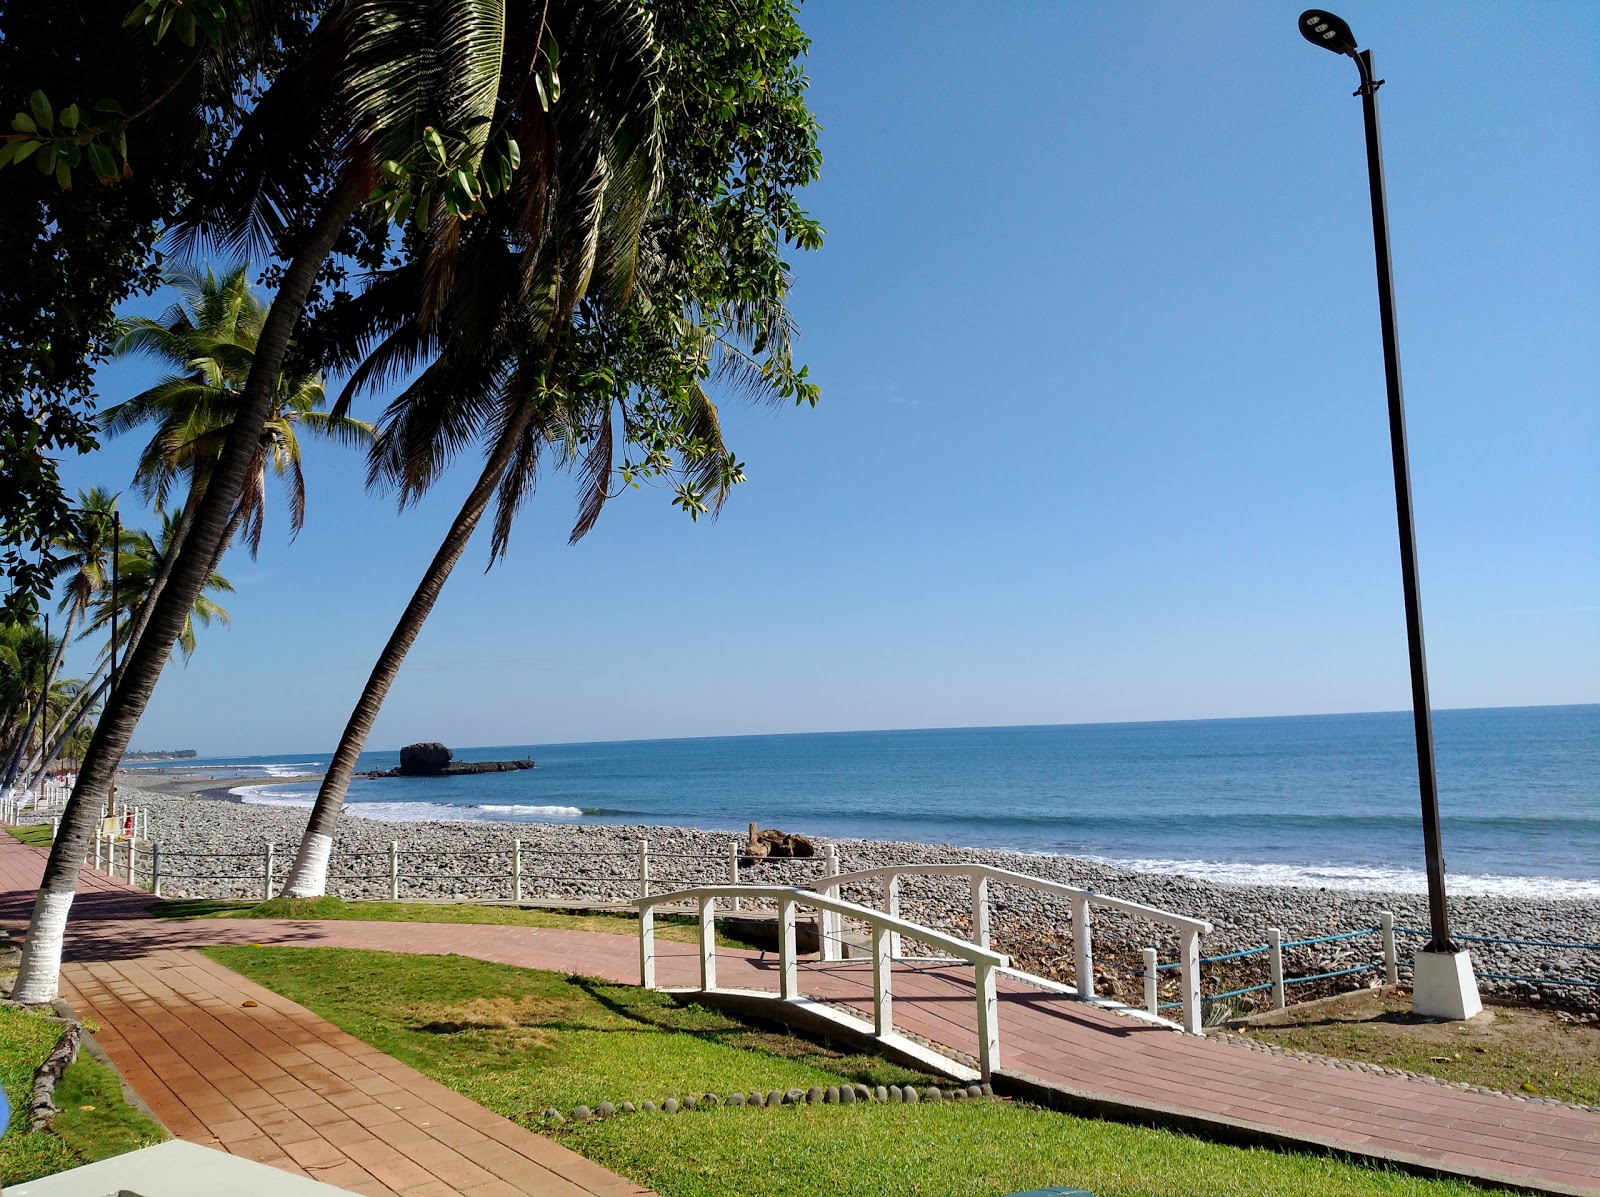 Φωτογραφία του Playa El Tunco με μακρά ευθεία ακτή